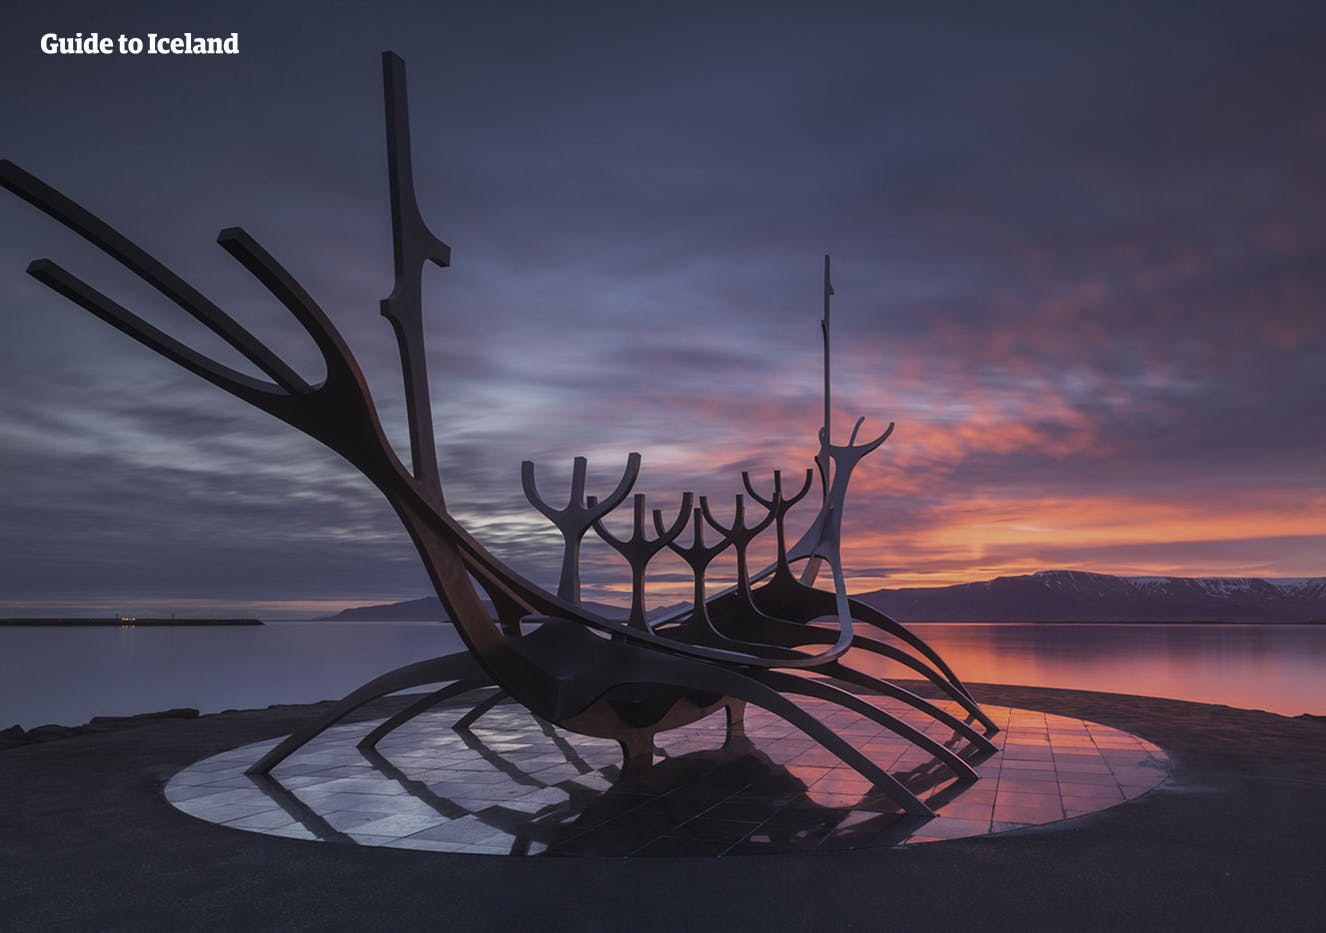 아이슬란드의 수도, 레이캬비크 해안가를 상징하는 선보야져!